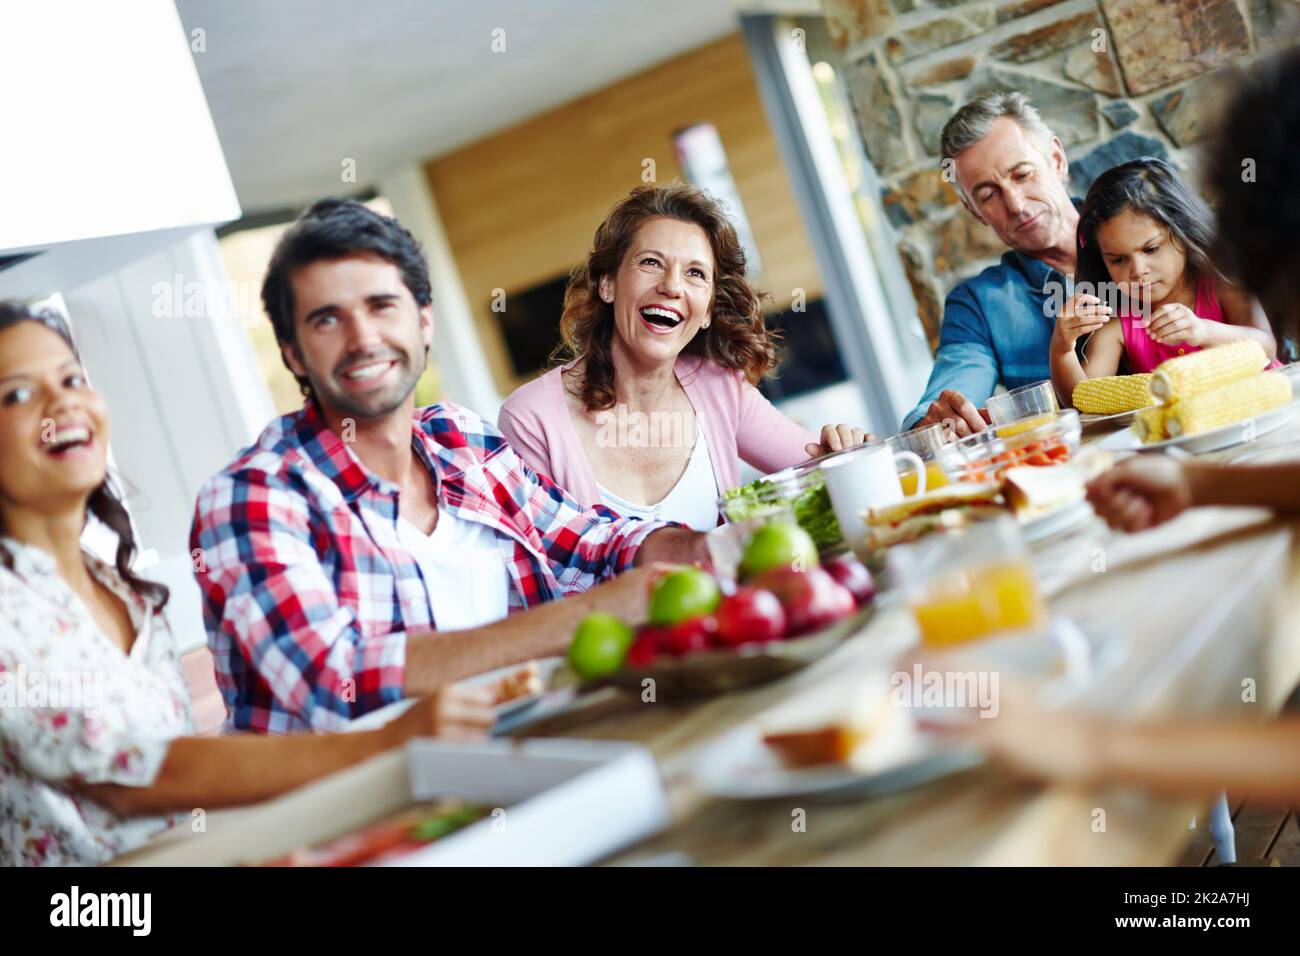 Genießen Sie Mahlzeiten als Familie. Eine glückliche Familie genießt eine gemeinsame Mahlzeit. Stockfoto